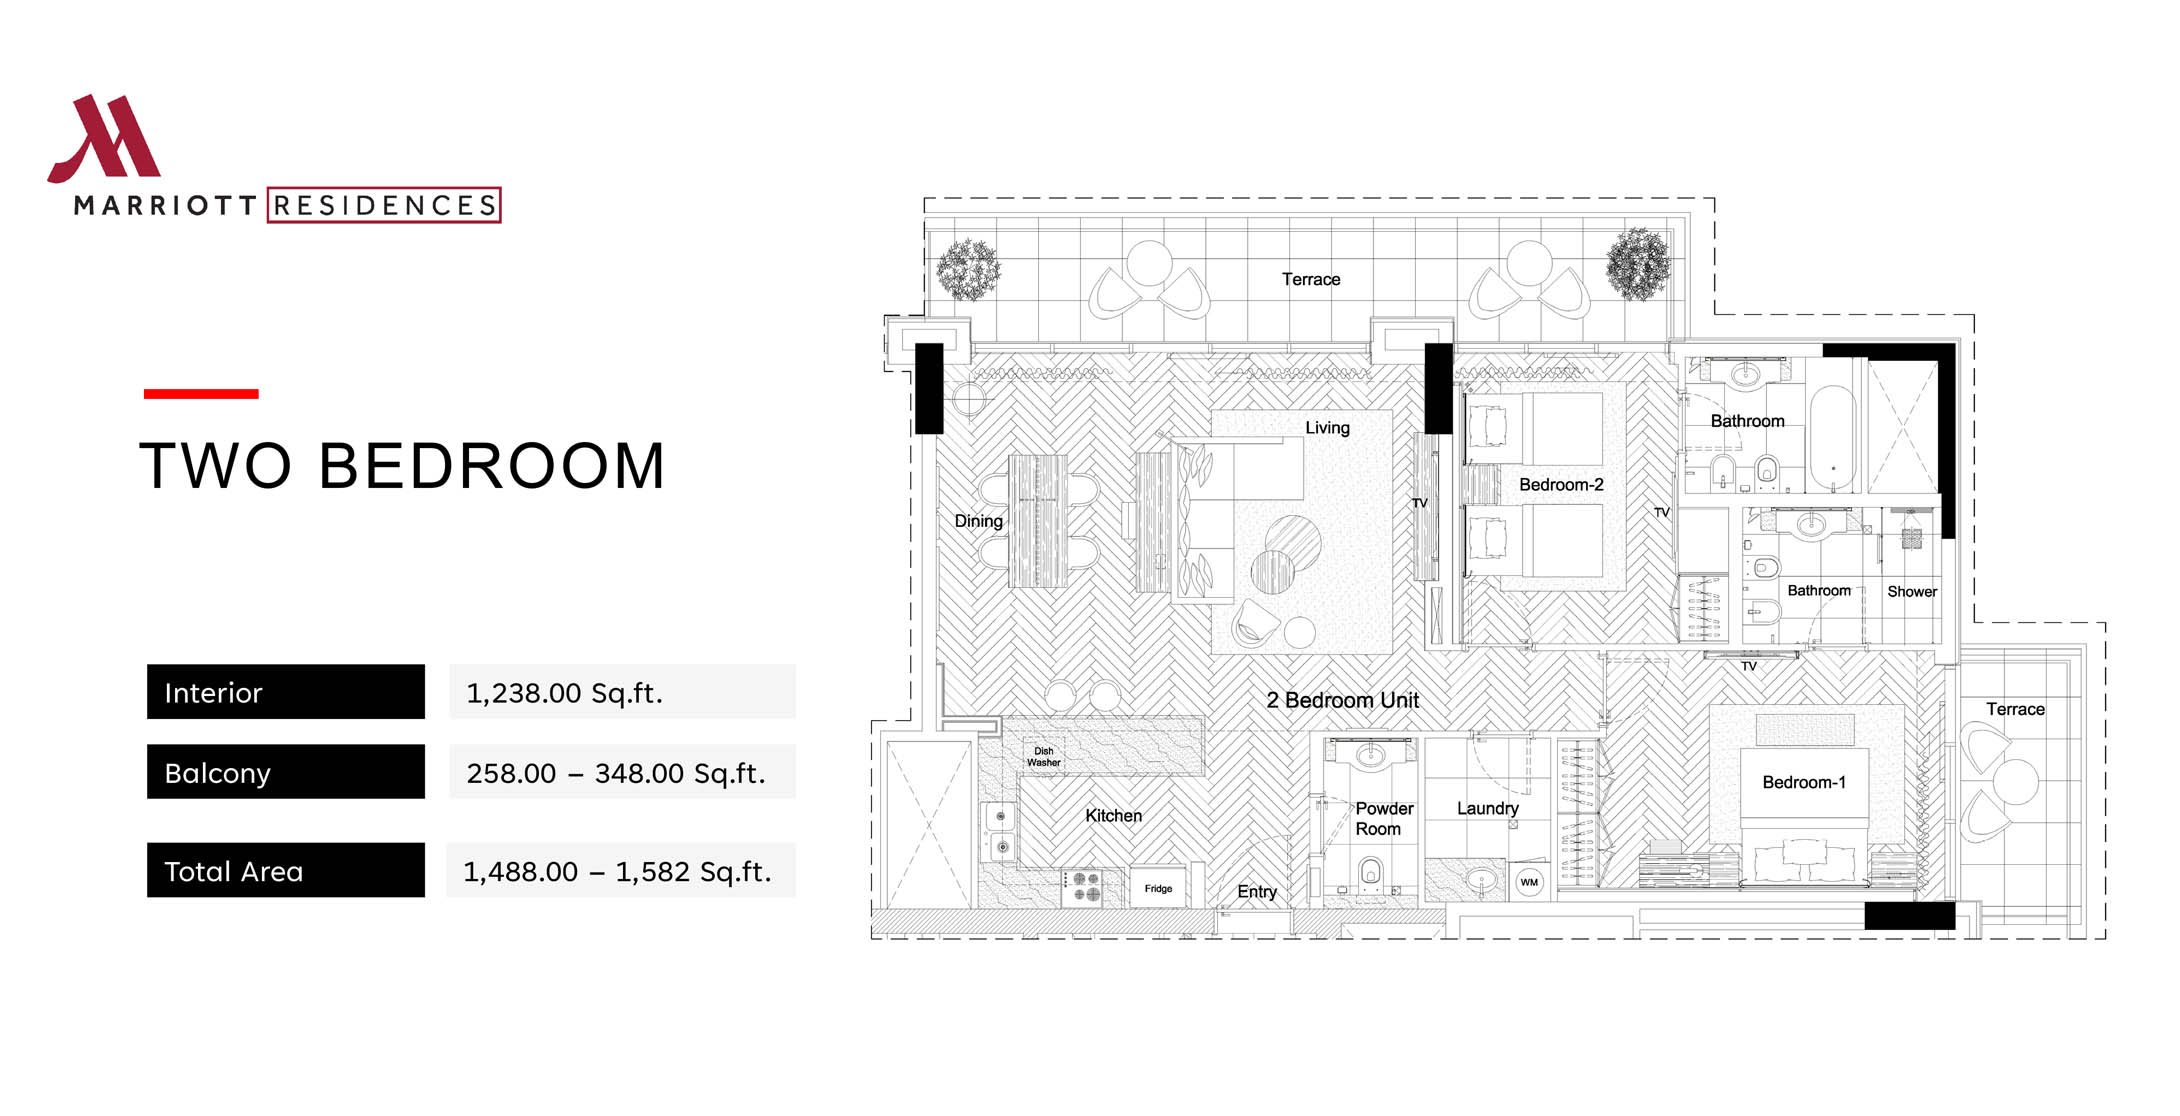 2 Bedroom Apartments Floor Plan